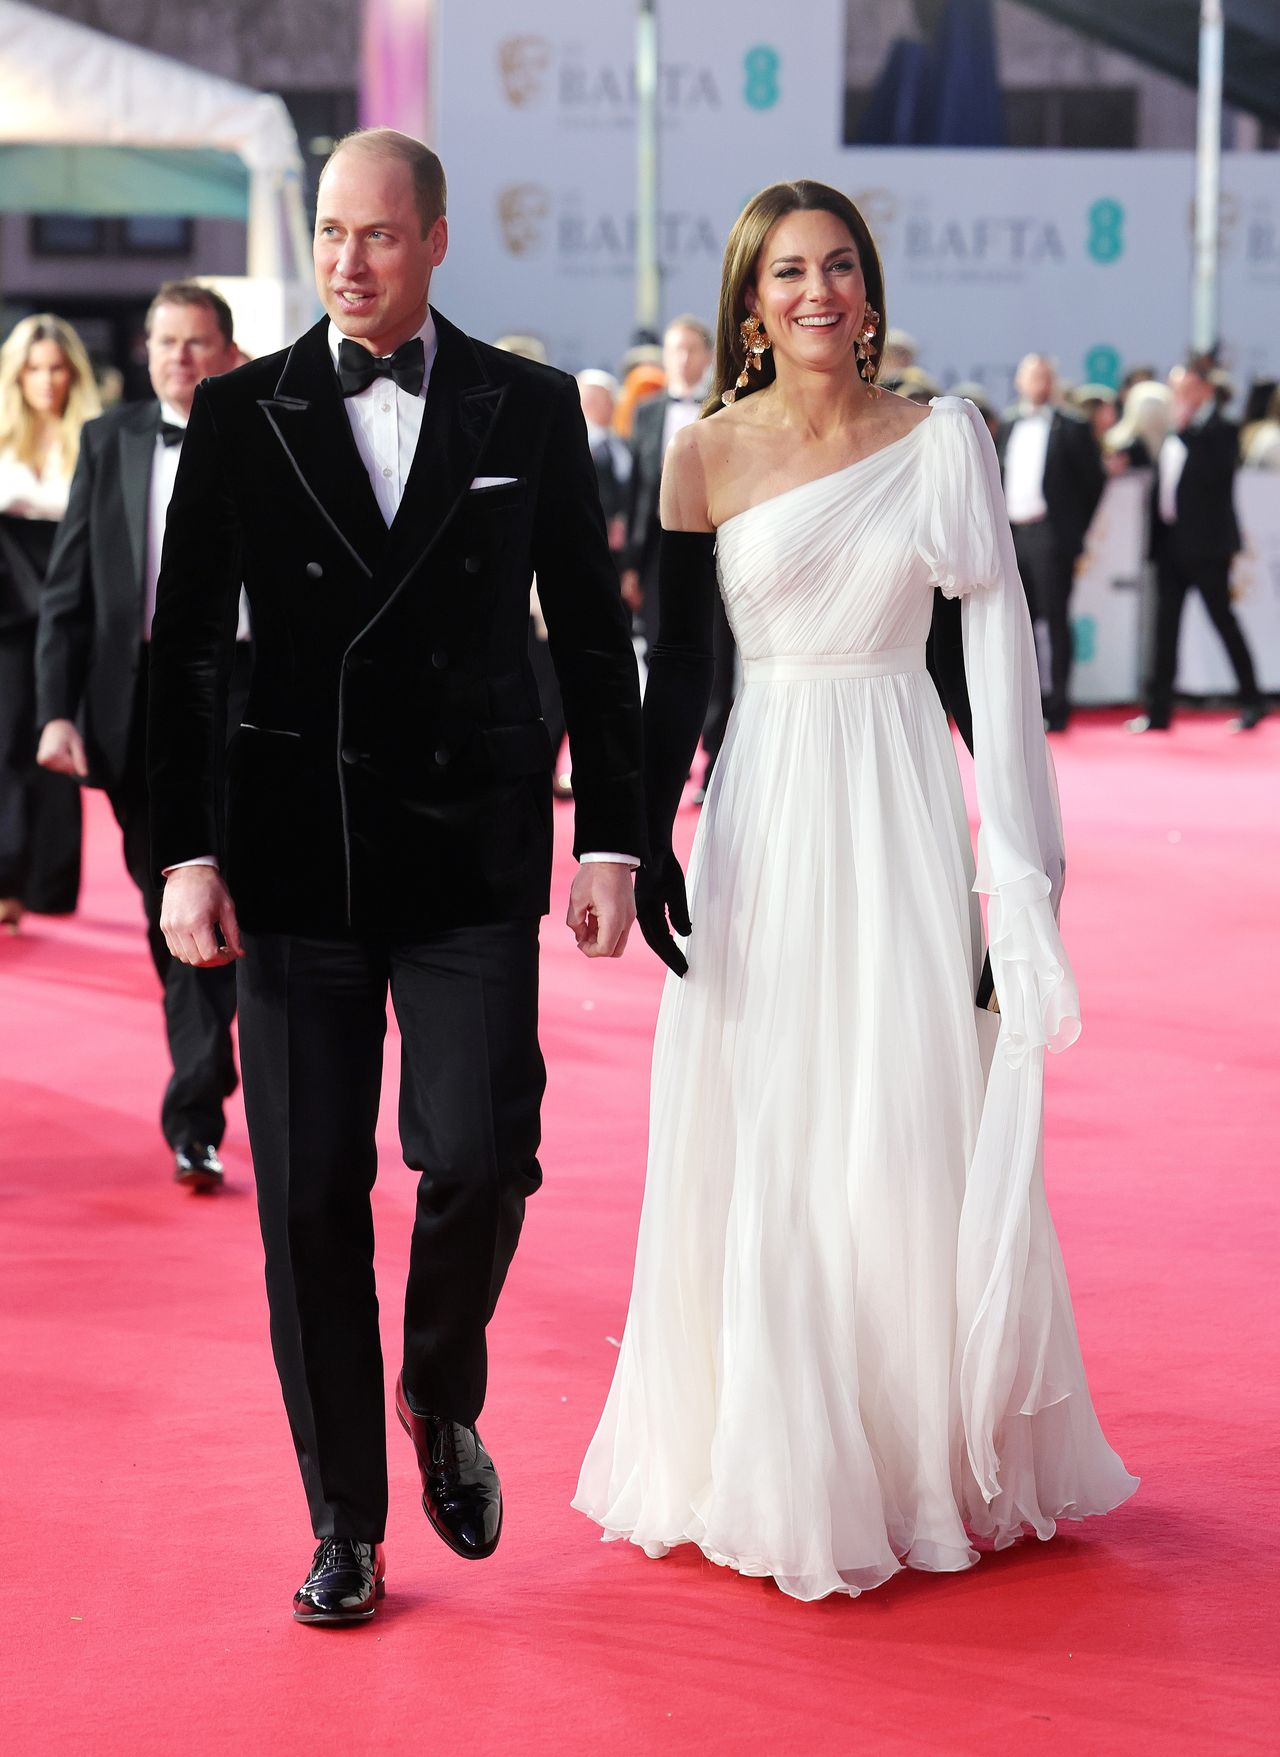 Wieczór rozdania brytyjskich nagród BAFTA należał do Williama i Kate